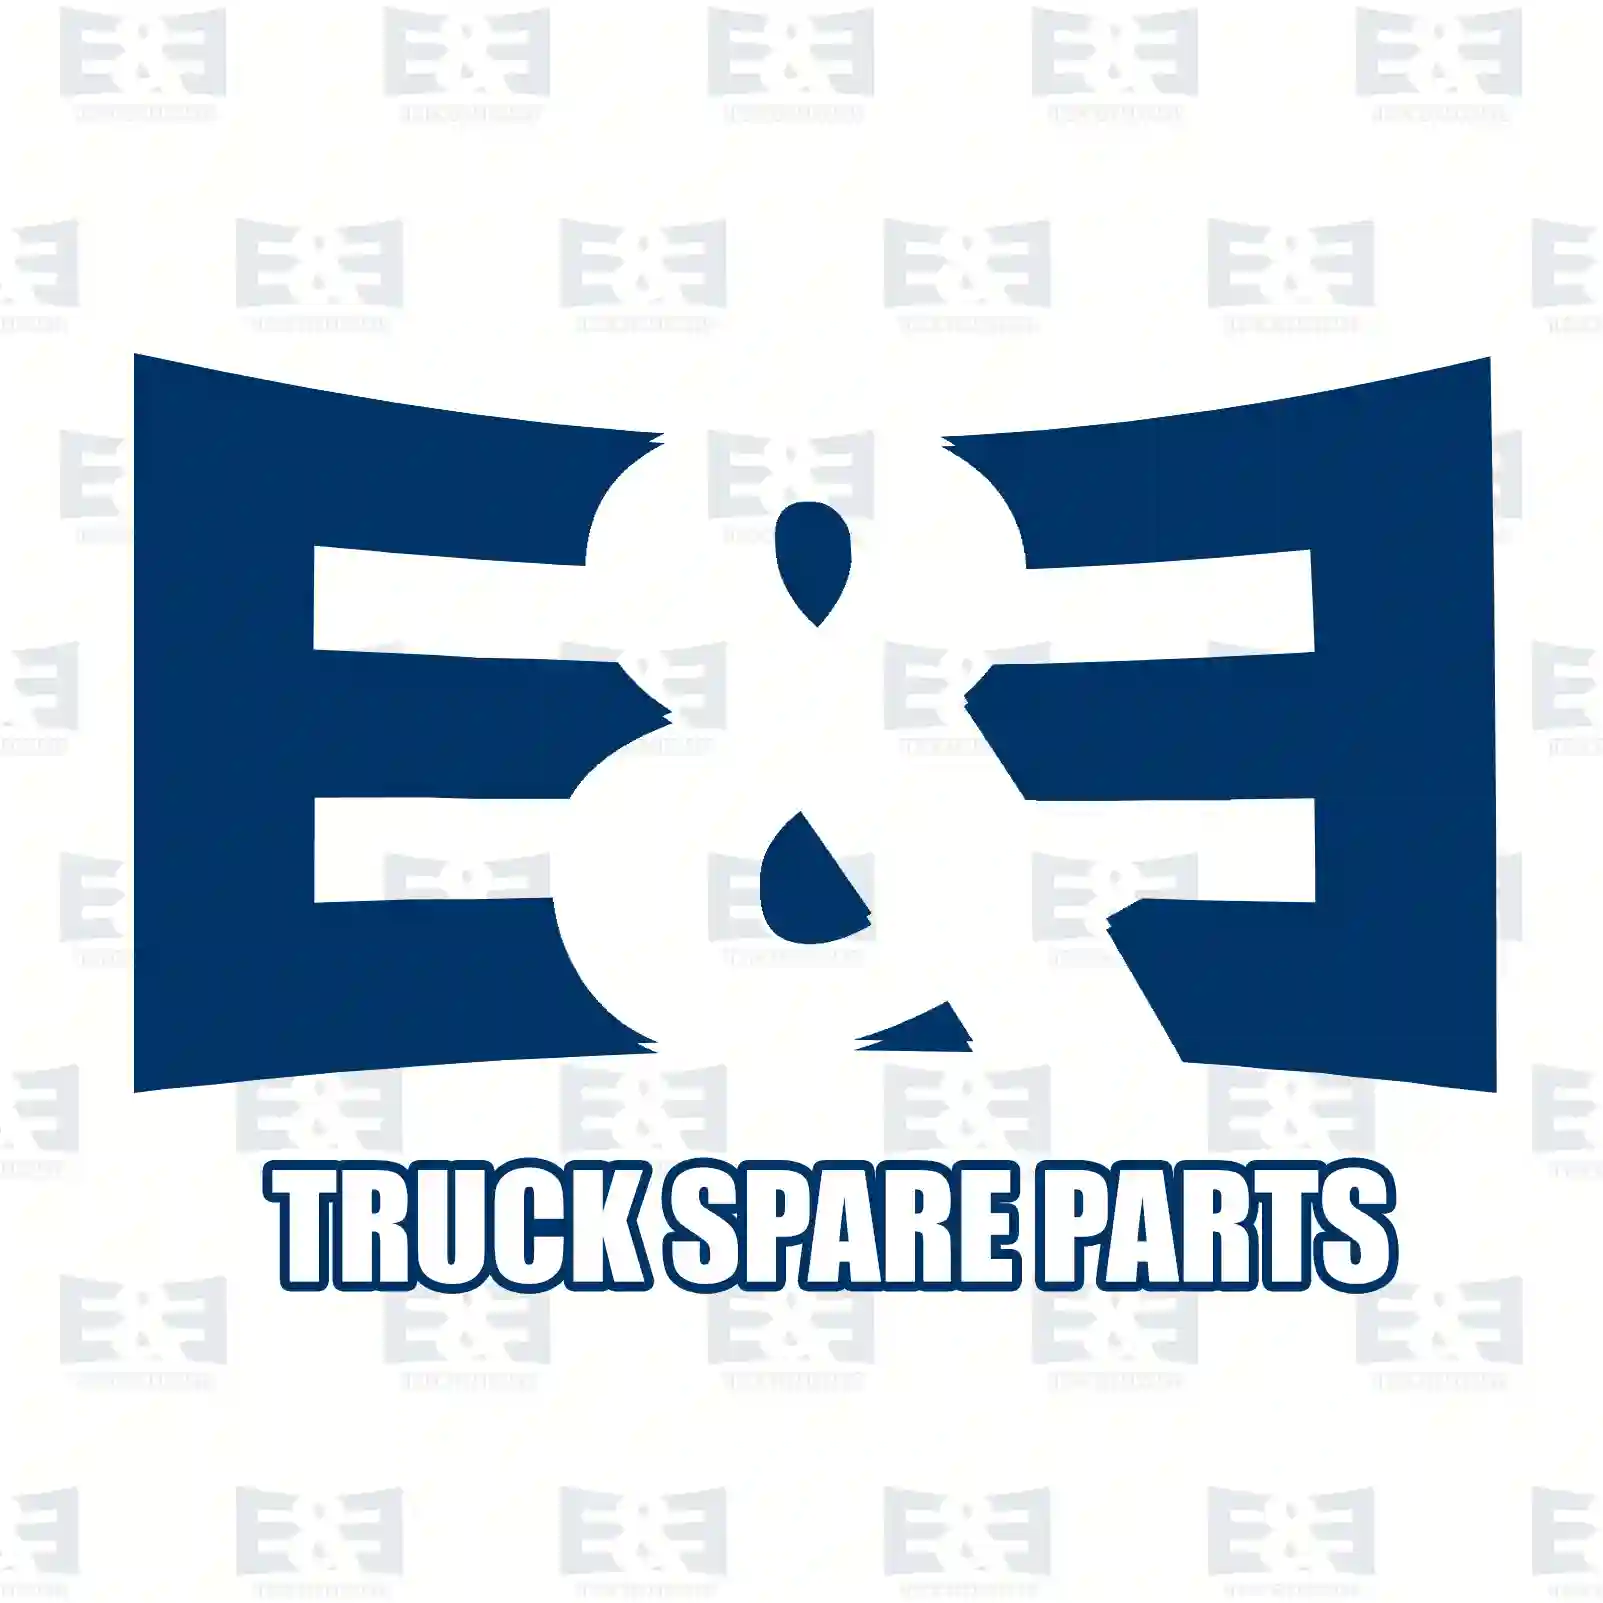 Clutch servo, 2E2288379, 1438606 ||  2E2288379 E&E Truck Spare Parts | Truck Spare Parts, Auotomotive Spare Parts Clutch servo, 2E2288379, 1438606 ||  2E2288379 E&E Truck Spare Parts | Truck Spare Parts, Auotomotive Spare Parts